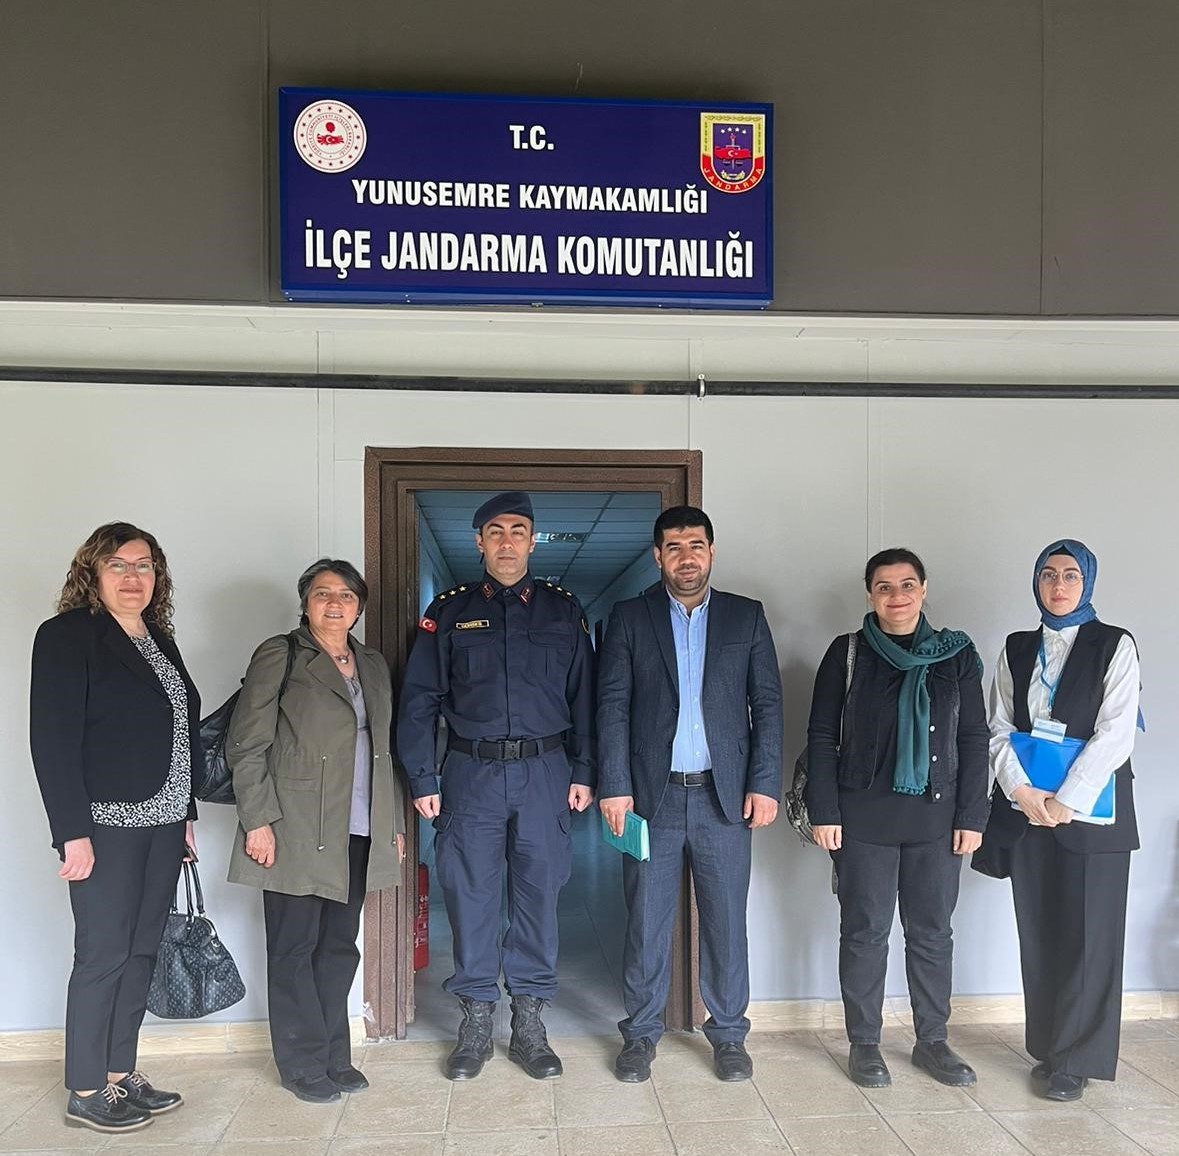 TİHEK Heyetinden Manisa Yunusemre İlçe Jandarma Komutanlığı Nezarethanelerine Habersiz Ziyaret